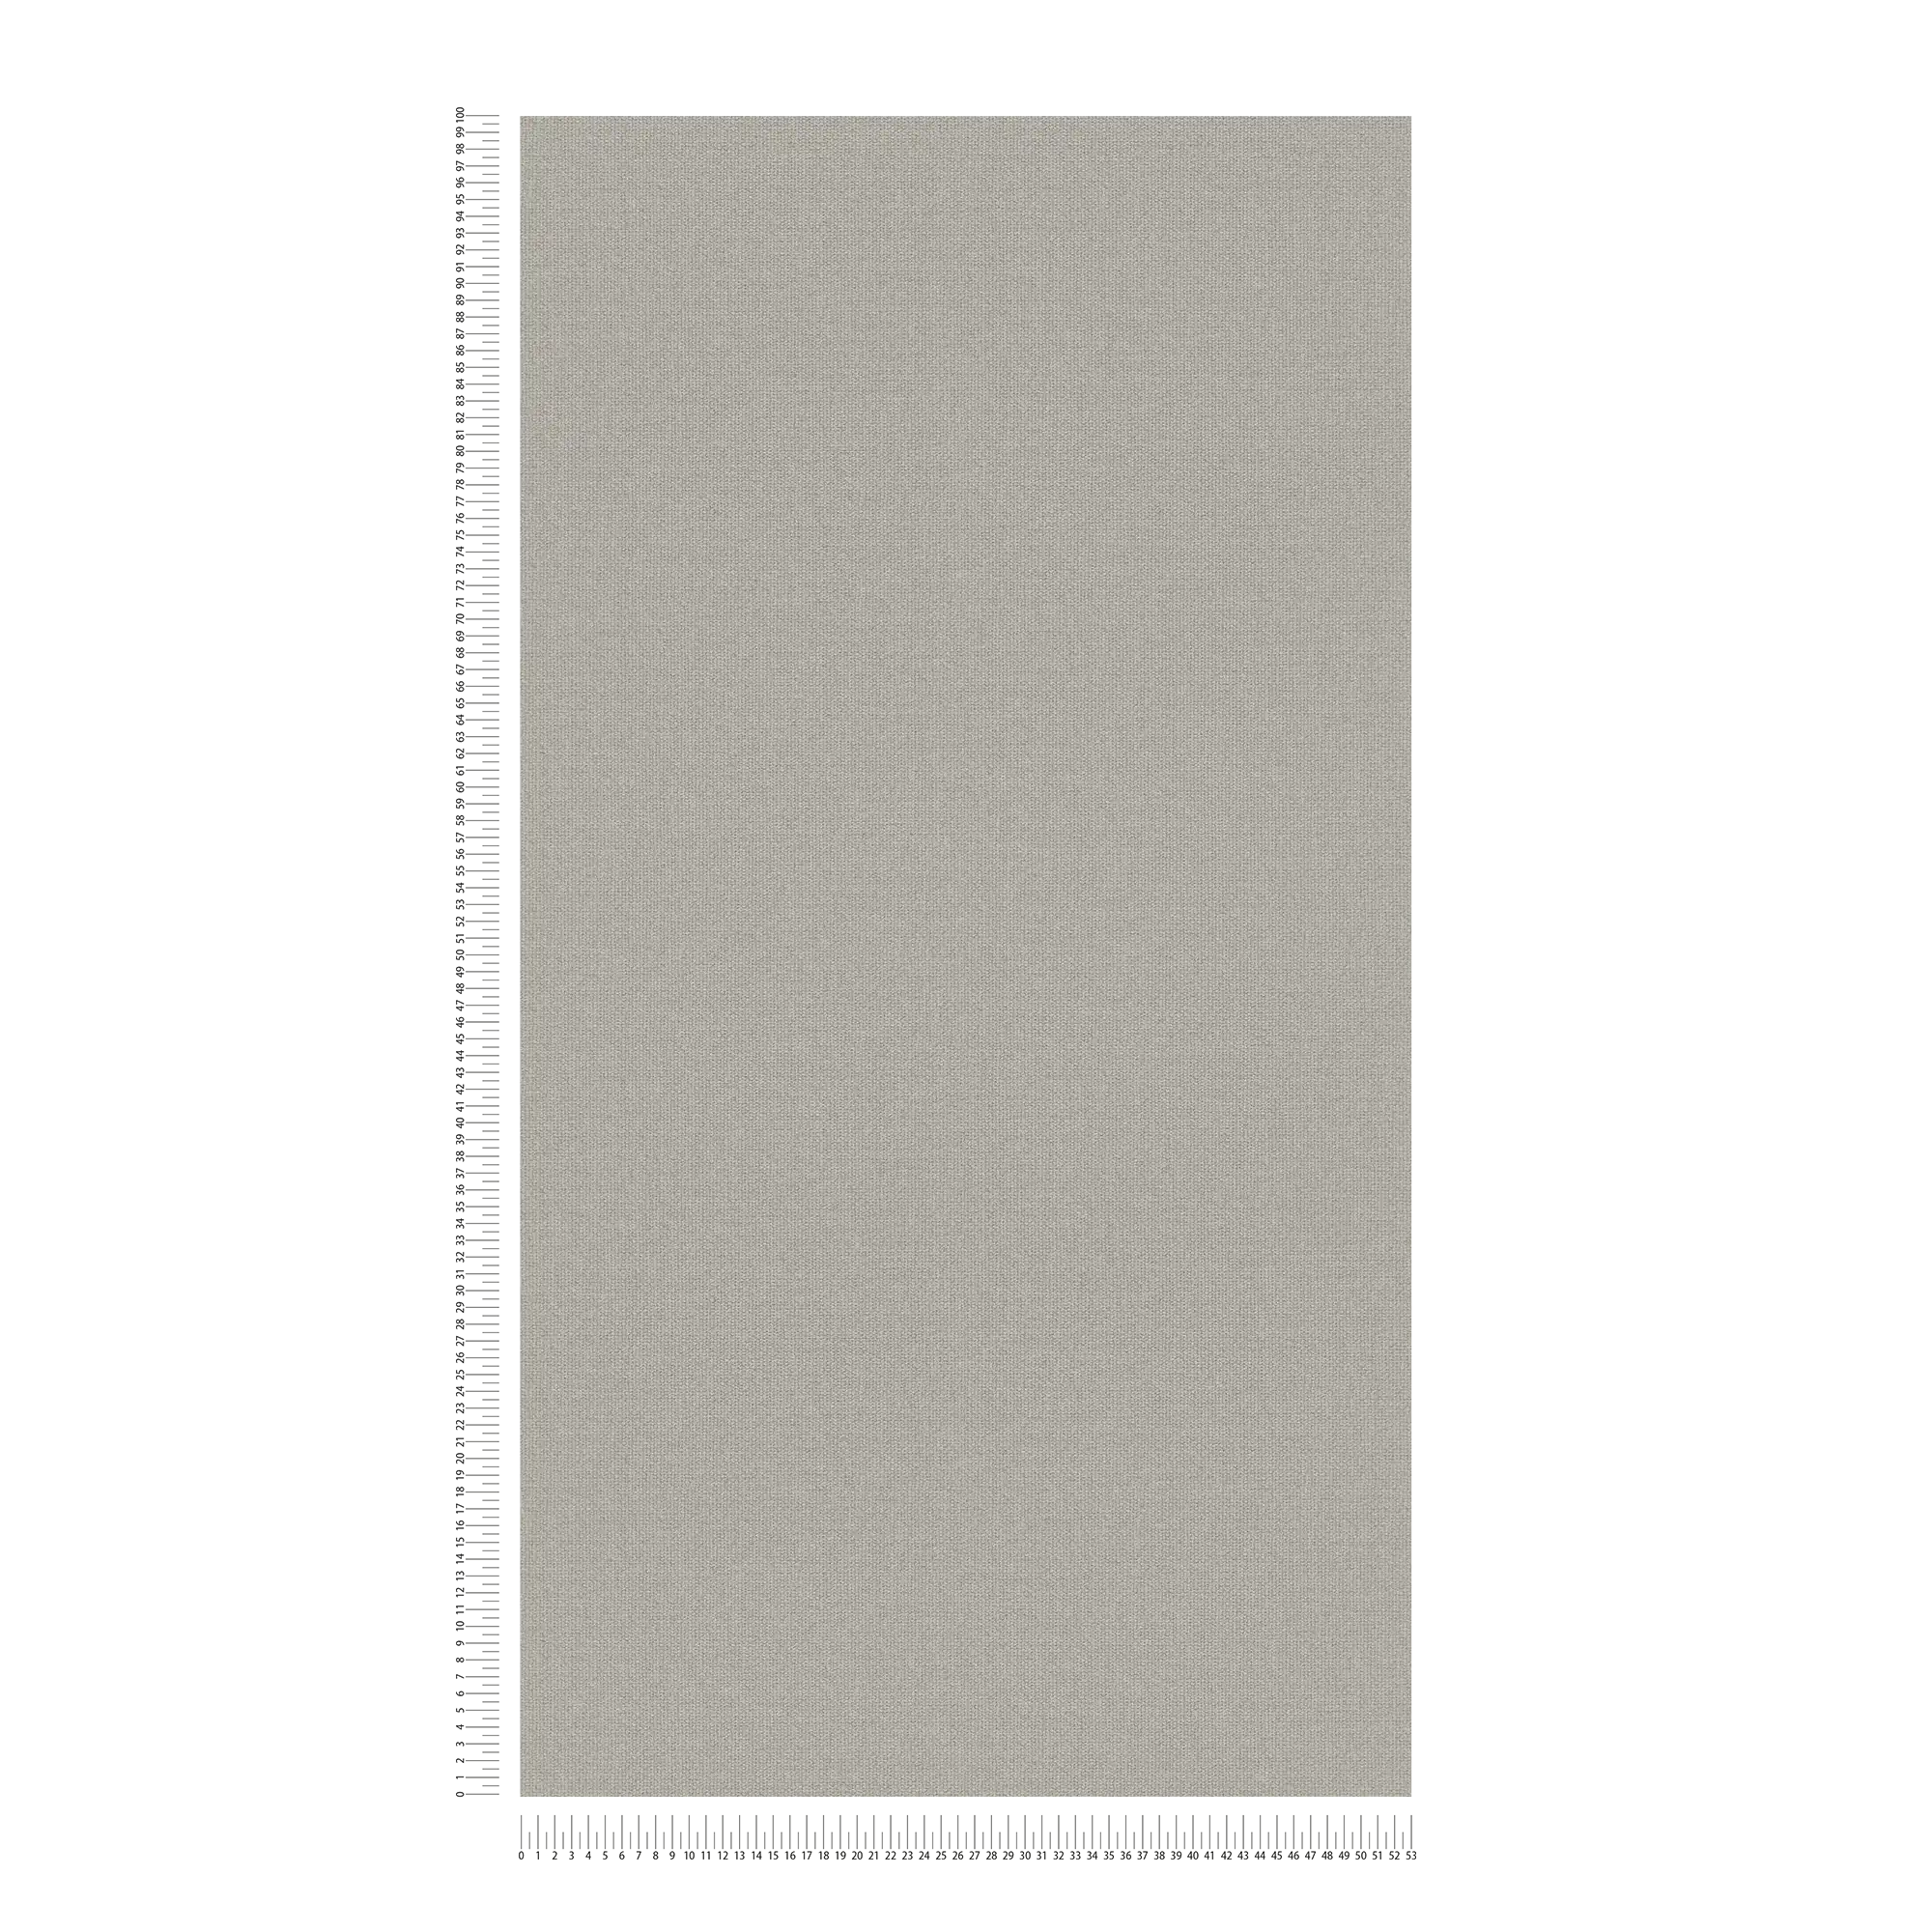             Carta da parati in tessuto non tessuto effetto lino con dettagli strutturati, tinta unita - grigio, beige
        